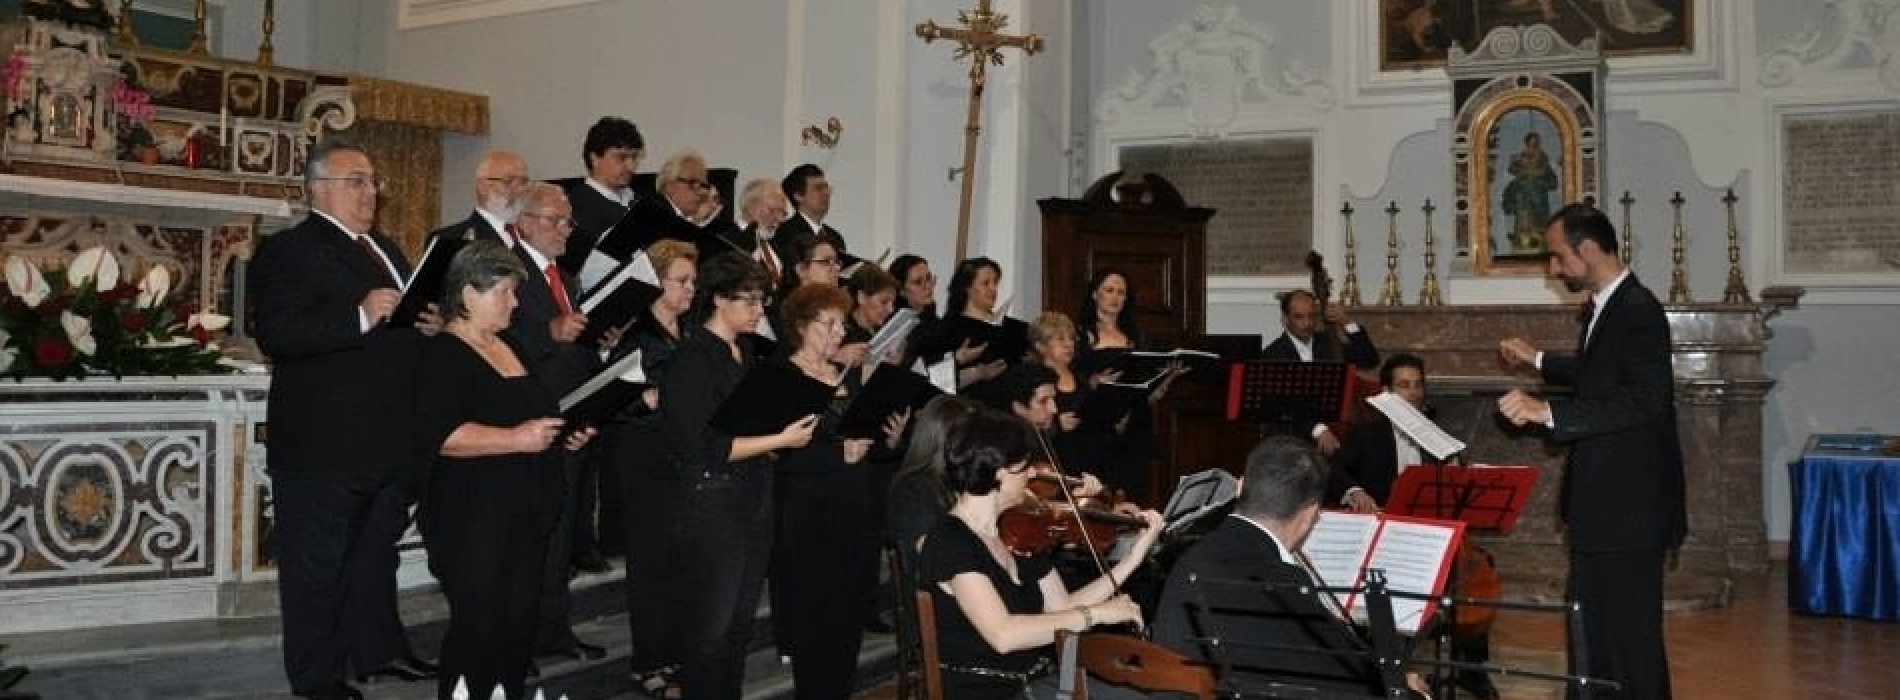 Passio, musica sacra nella chiesa di San Benedetto a Caserta